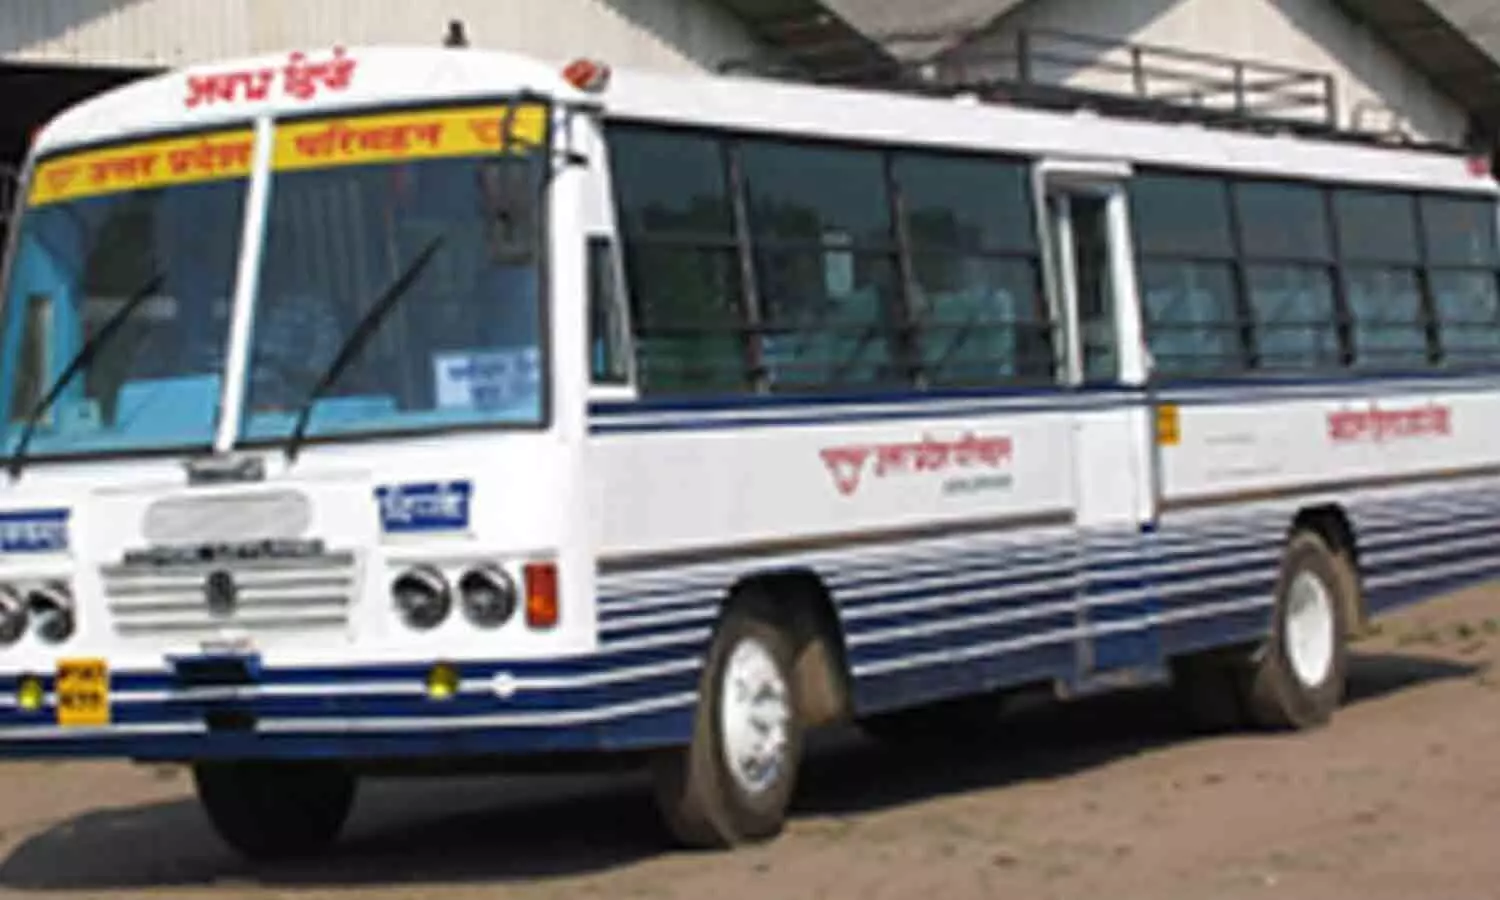 Uttar Pradesh Transport Corporation buses